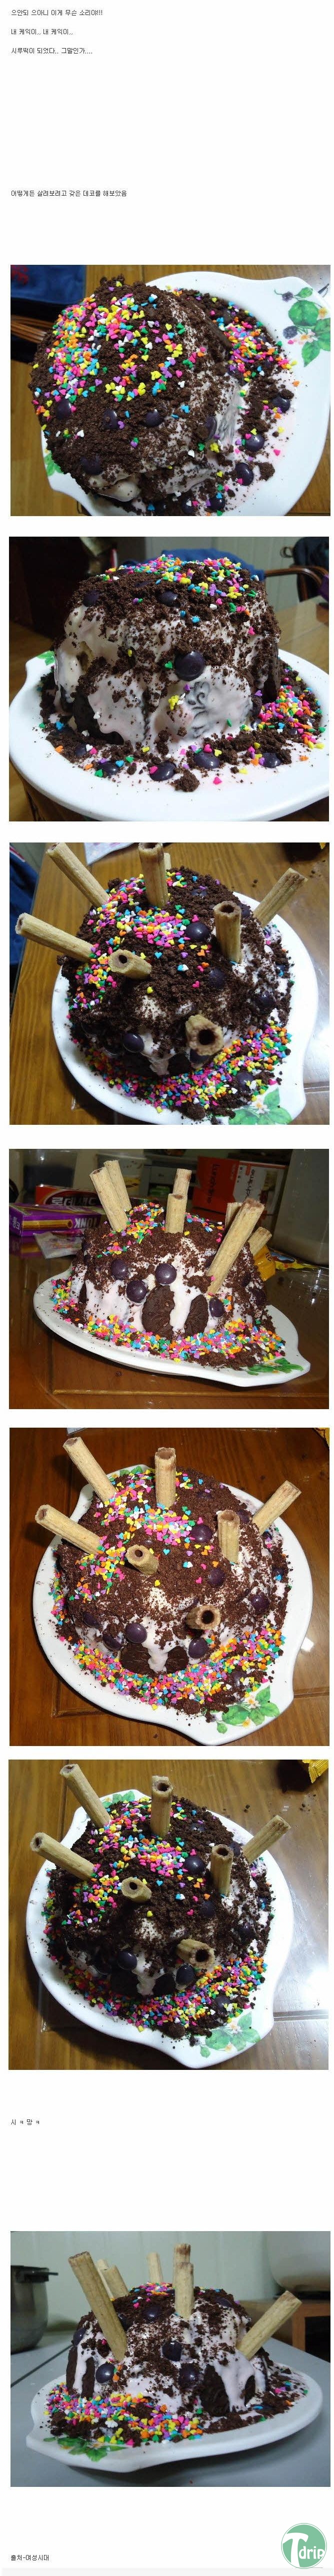 3.jpg : 남친을 위한 케이크 만들기.jpg